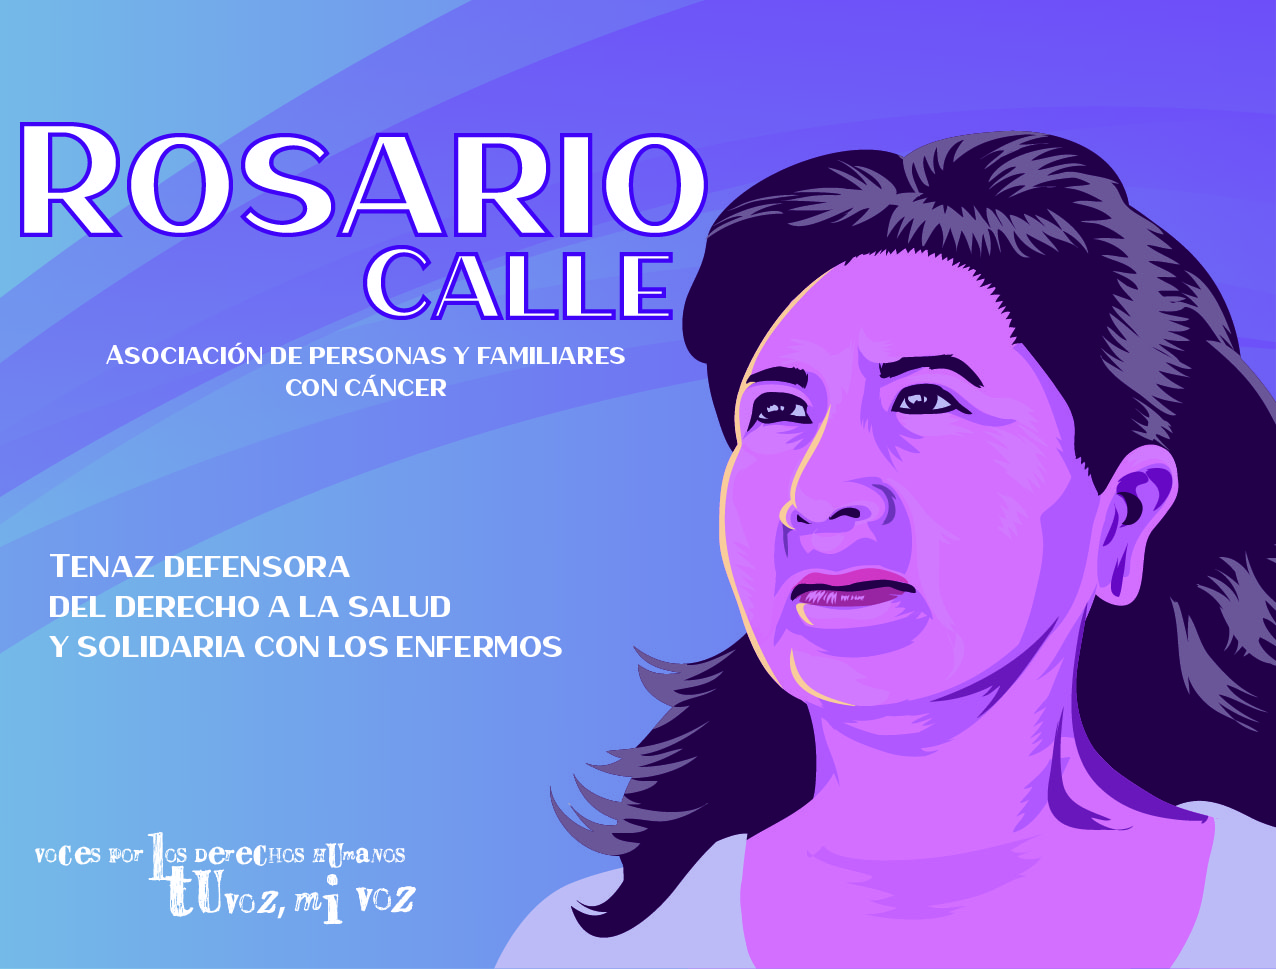 ¿Quién es Rosario Calle?